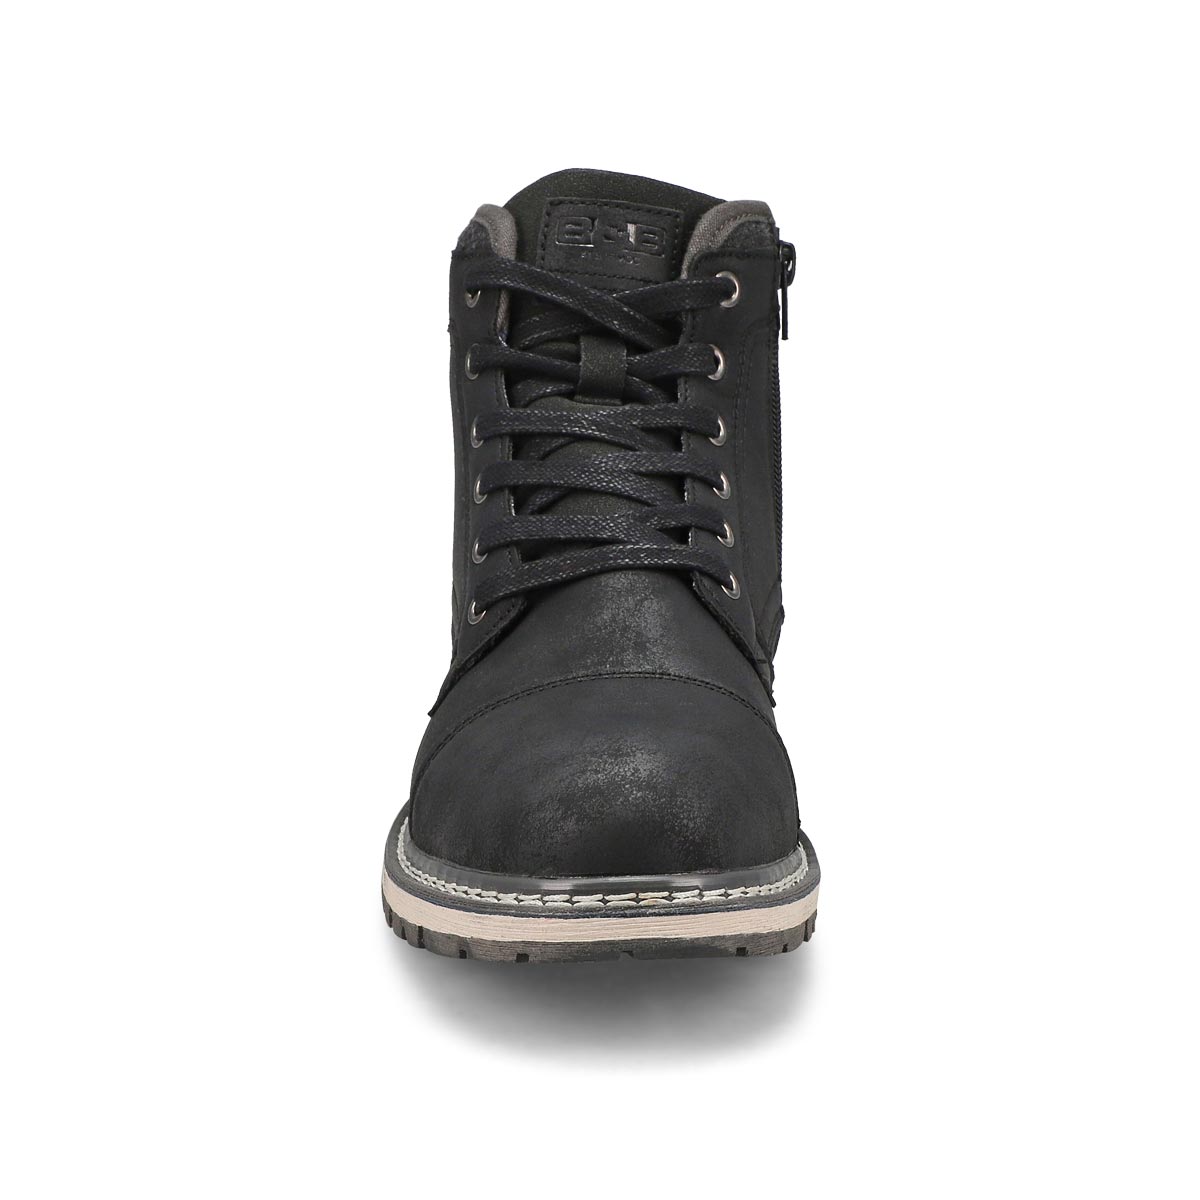 Men's Bucky Ankle Boot - Black